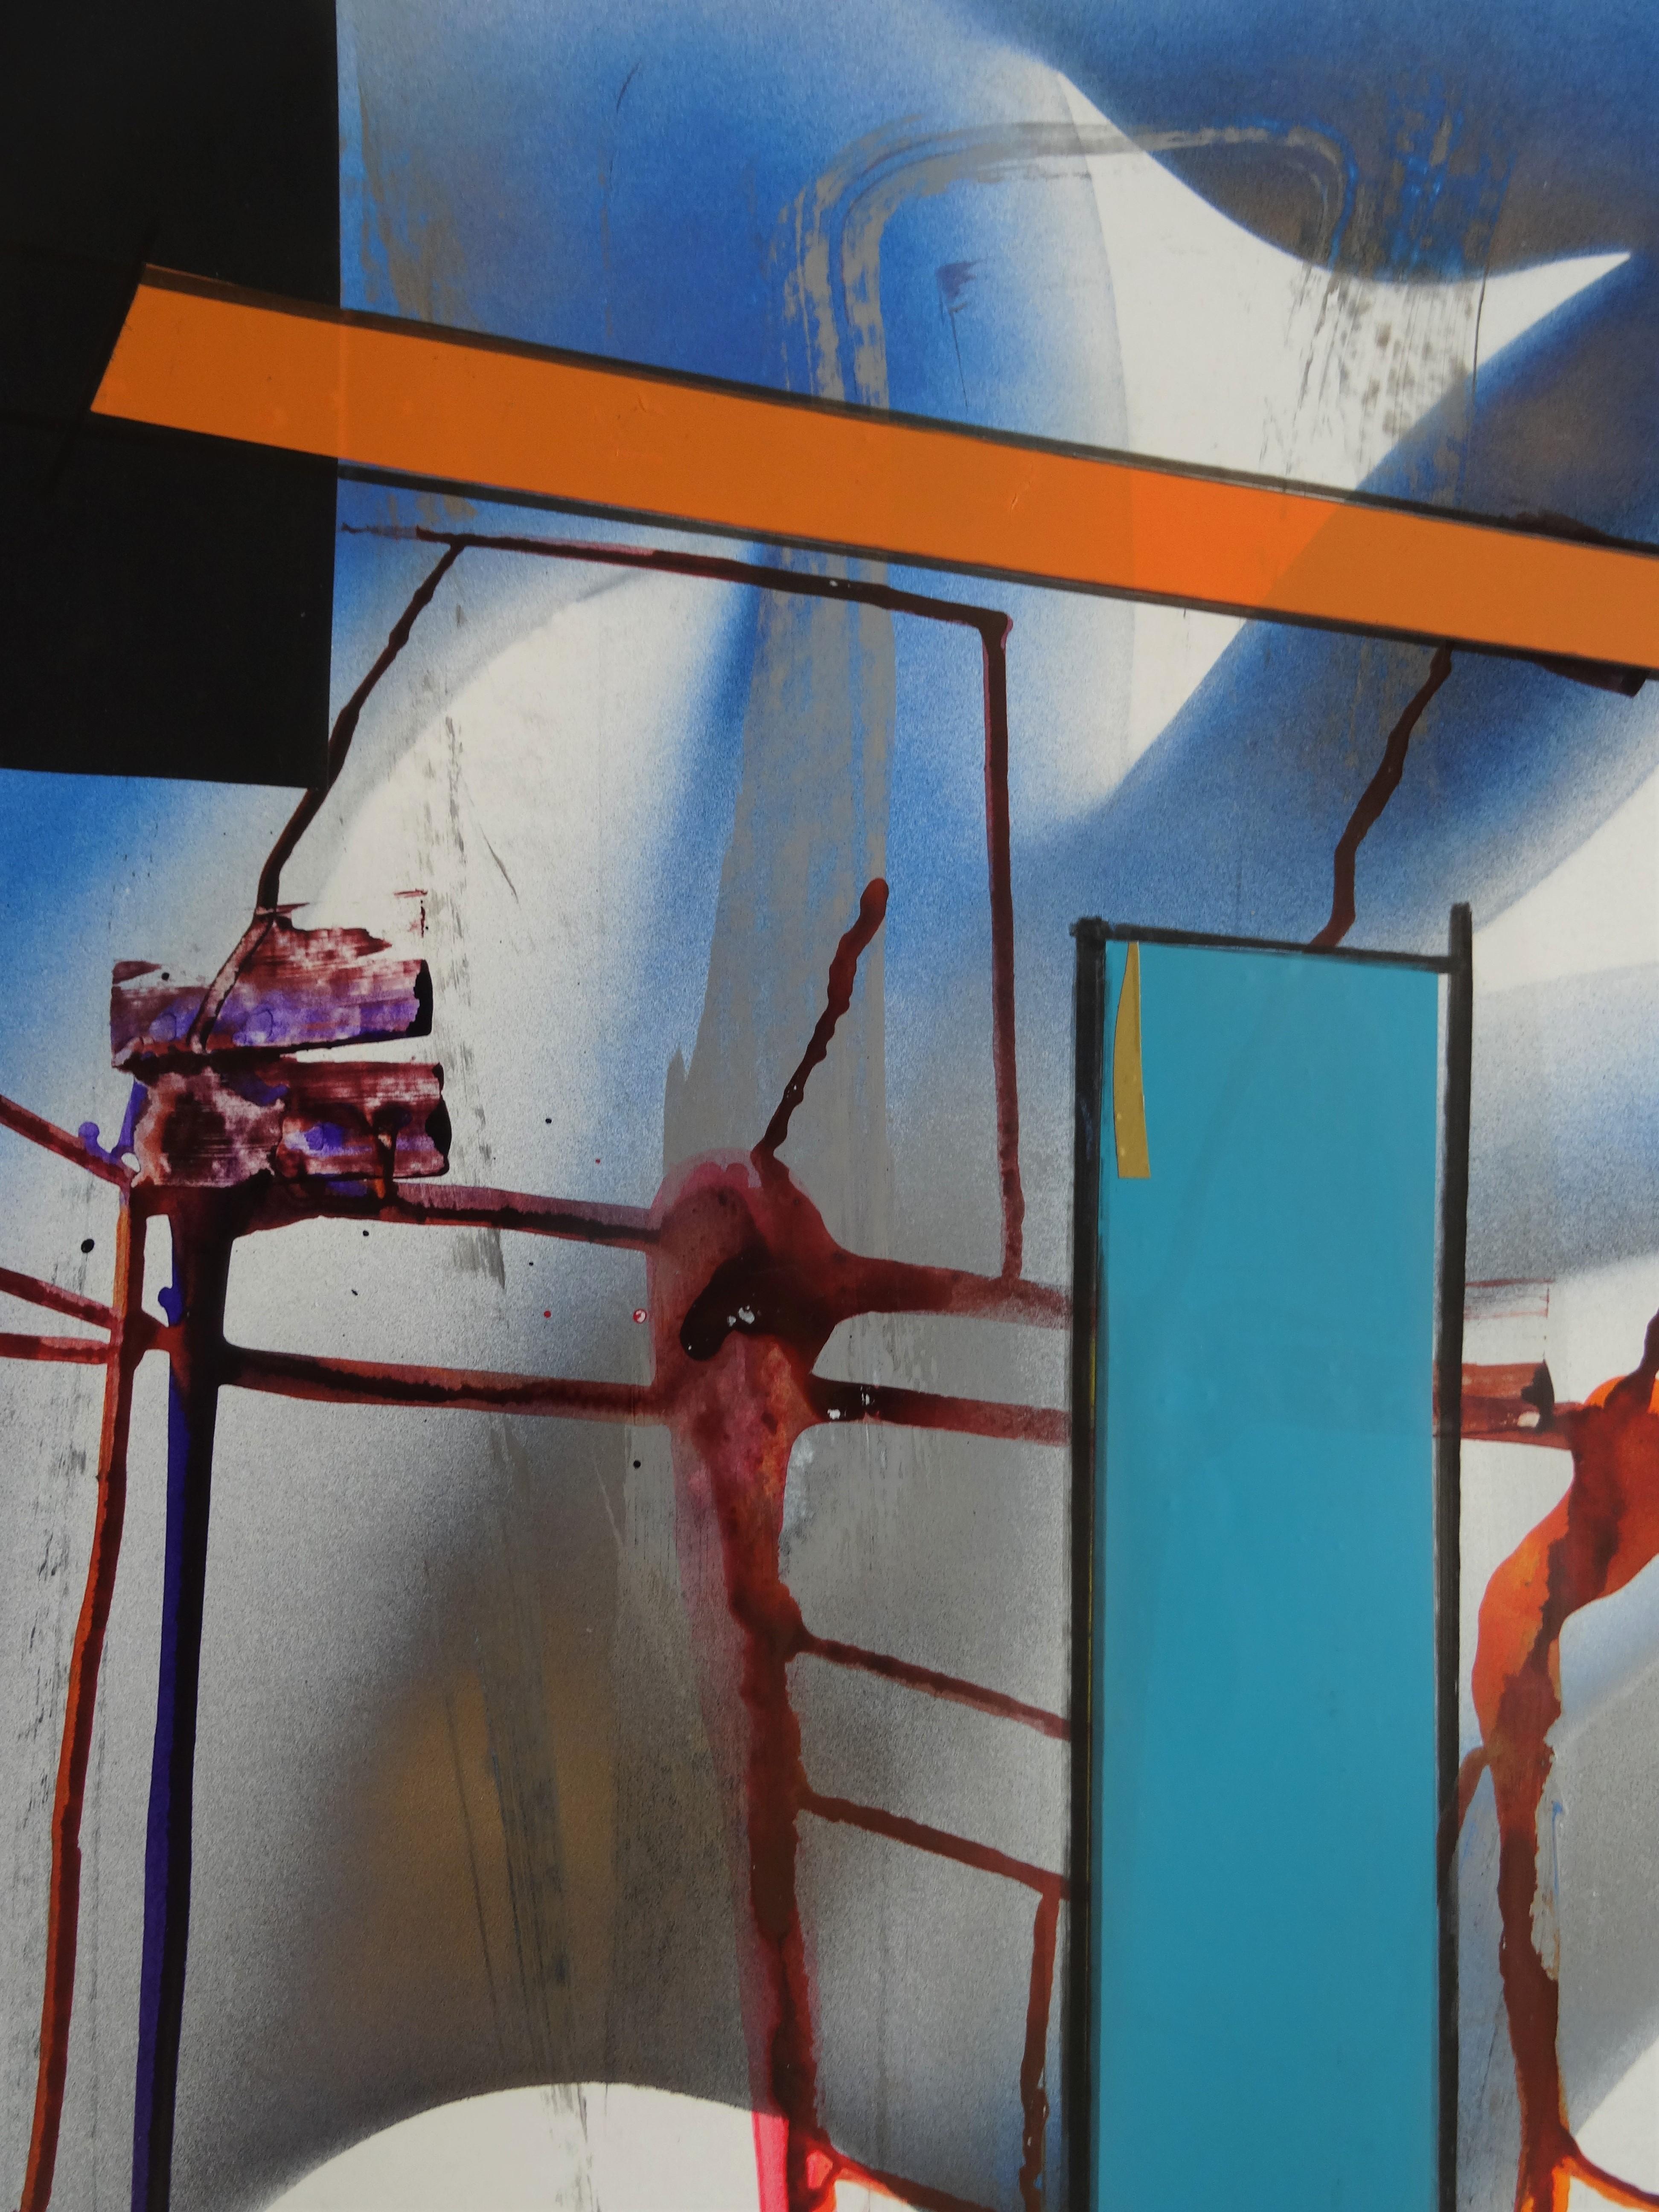 Cette série d'œuvres abstraites de grande taille, réalisées selon une technique mixte, rend hommage aux grands modernistes et expressionnistes abstraits tels que Mondrian, Kandinsky, Still et Motherwell. 

Māris Abiļevs (né le 23 avril 1956 au